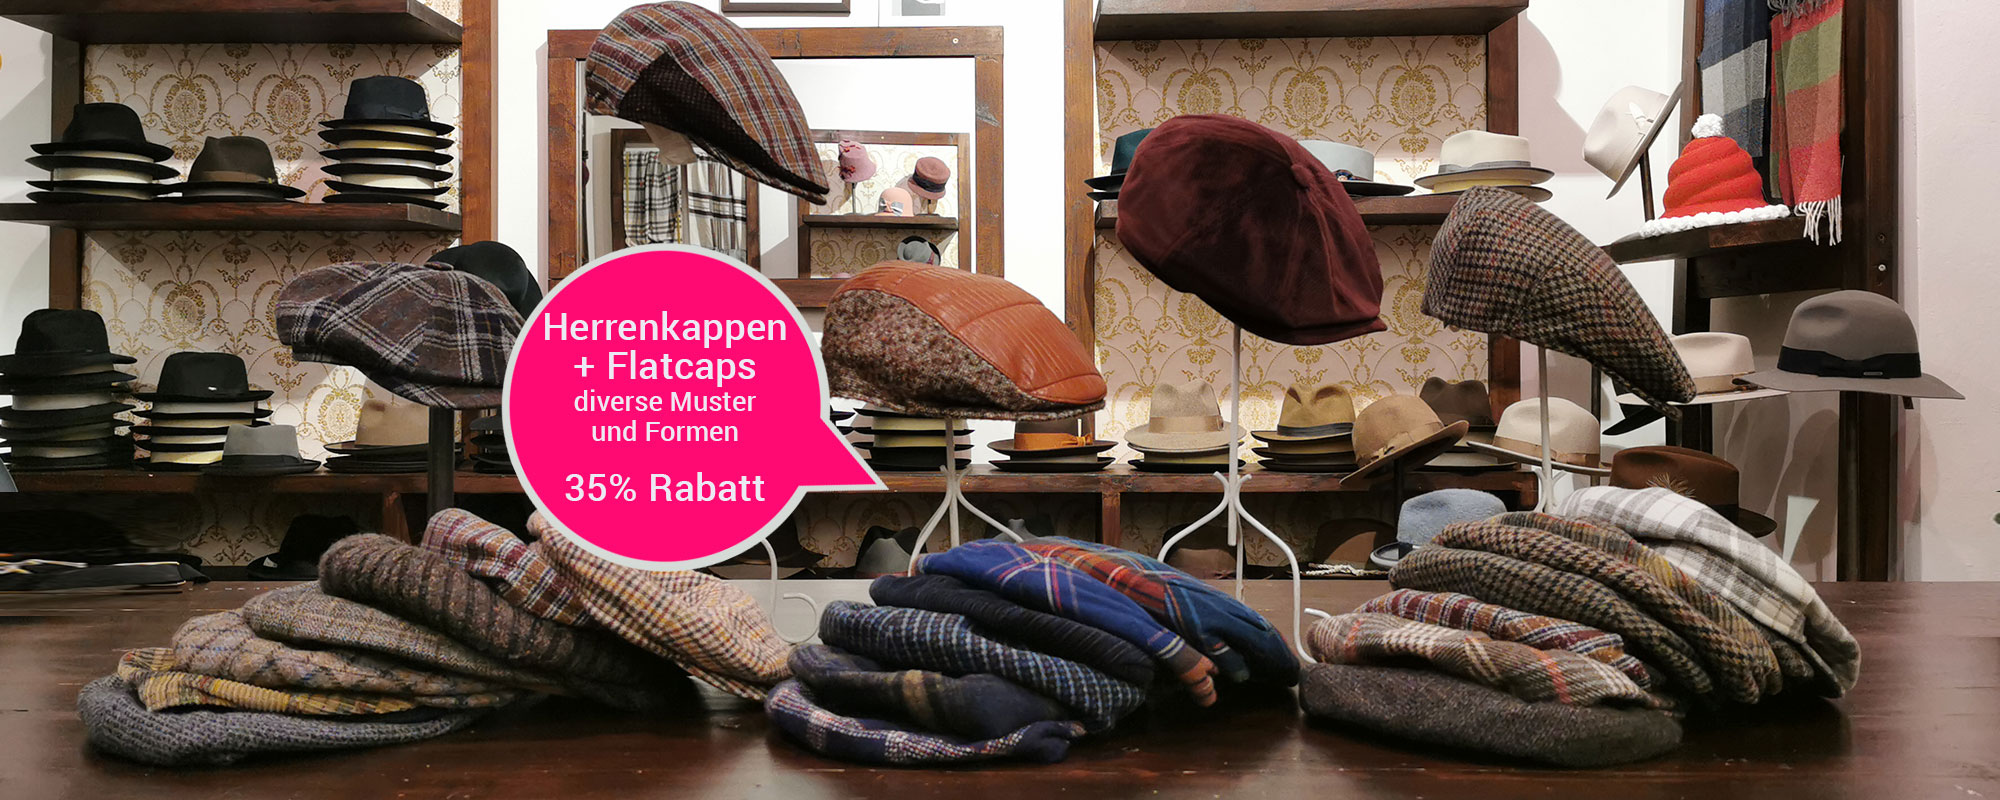 Herrenkappen + Flatcaps - diverse Muster und Formen 35% Rabatt